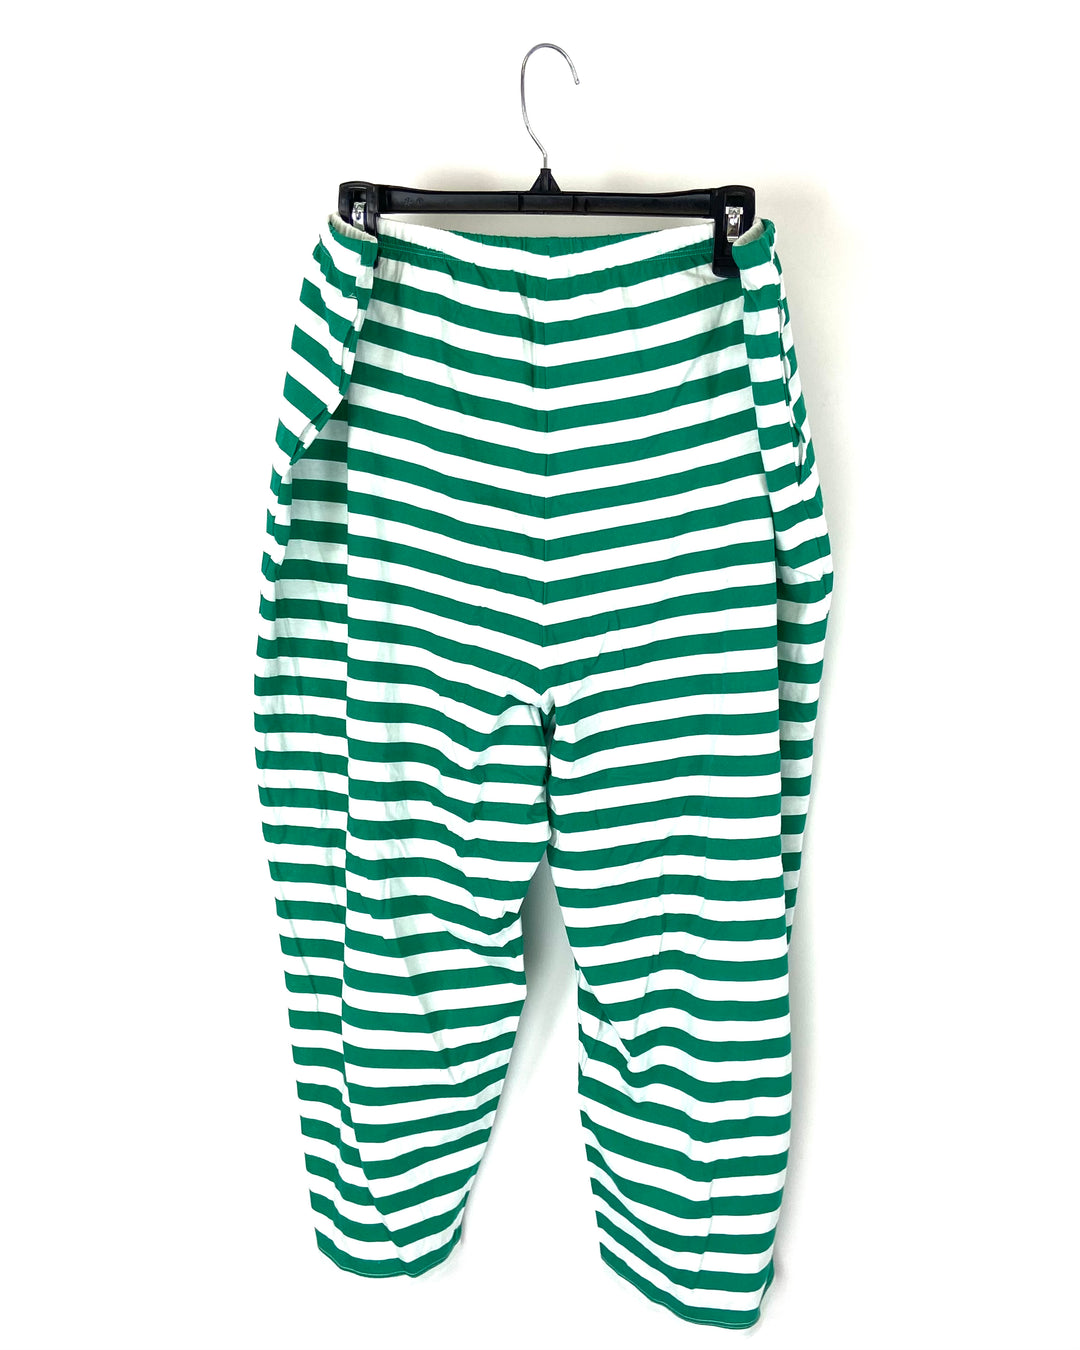 Green Striped Capri Pajama Pants - Size 18W